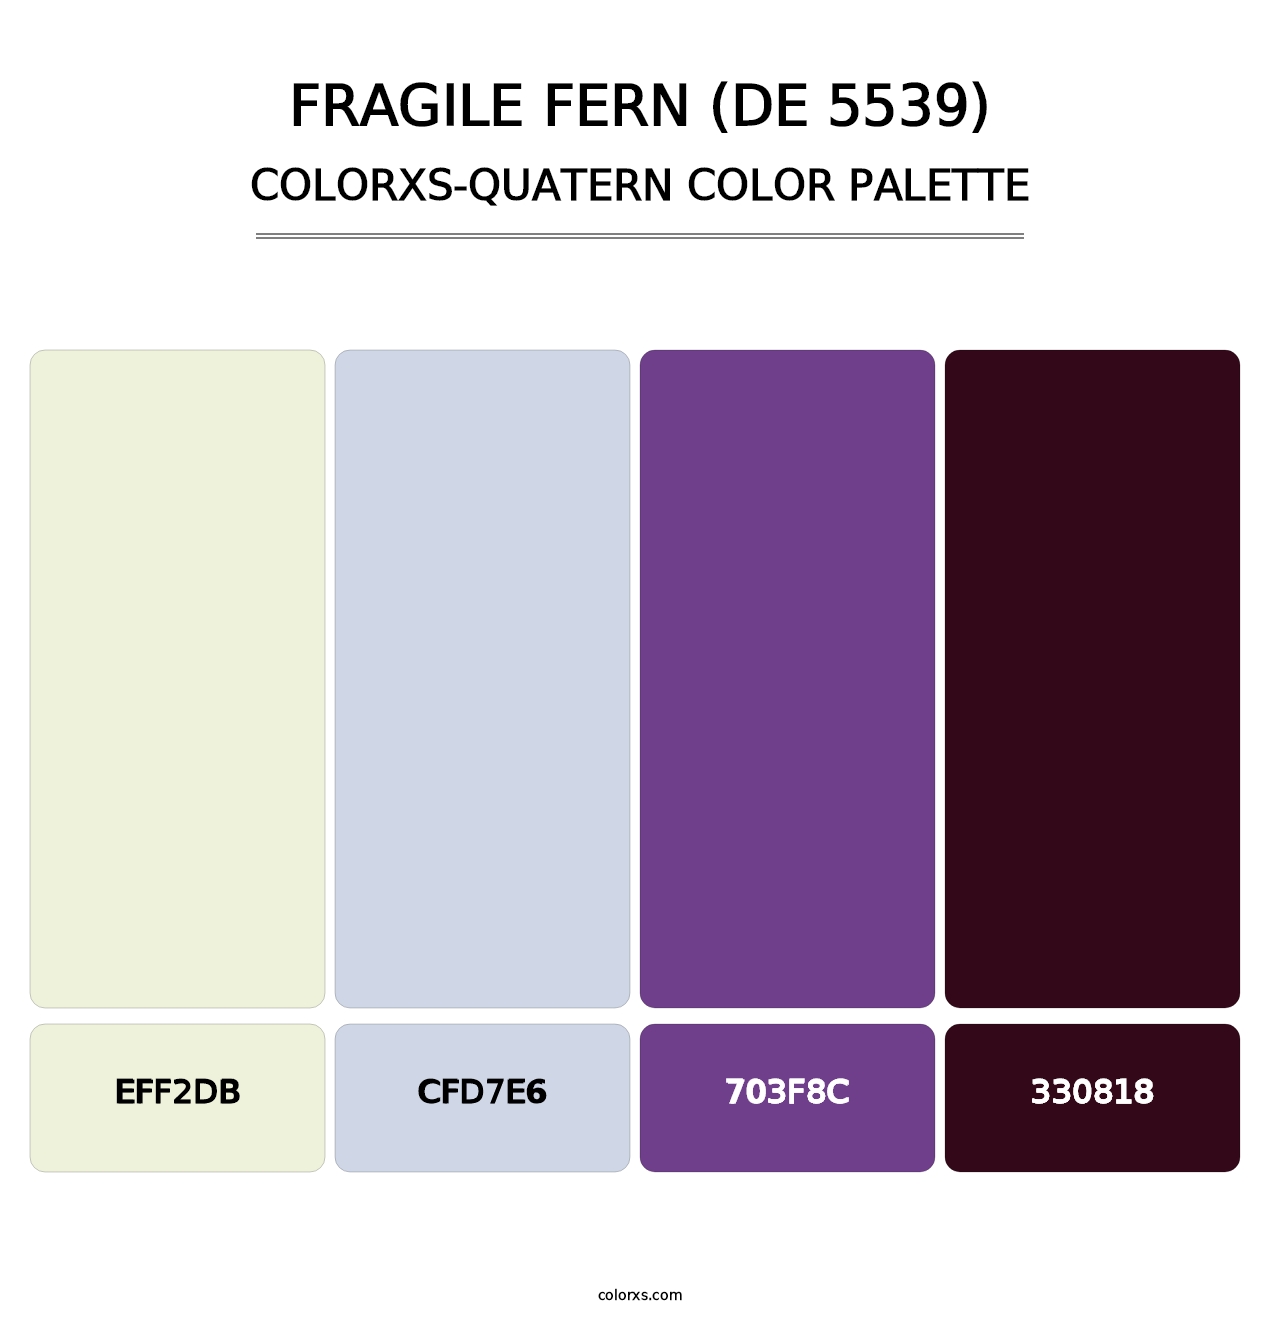 Fragile Fern (DE 5539) - Colorxs Quatern Palette